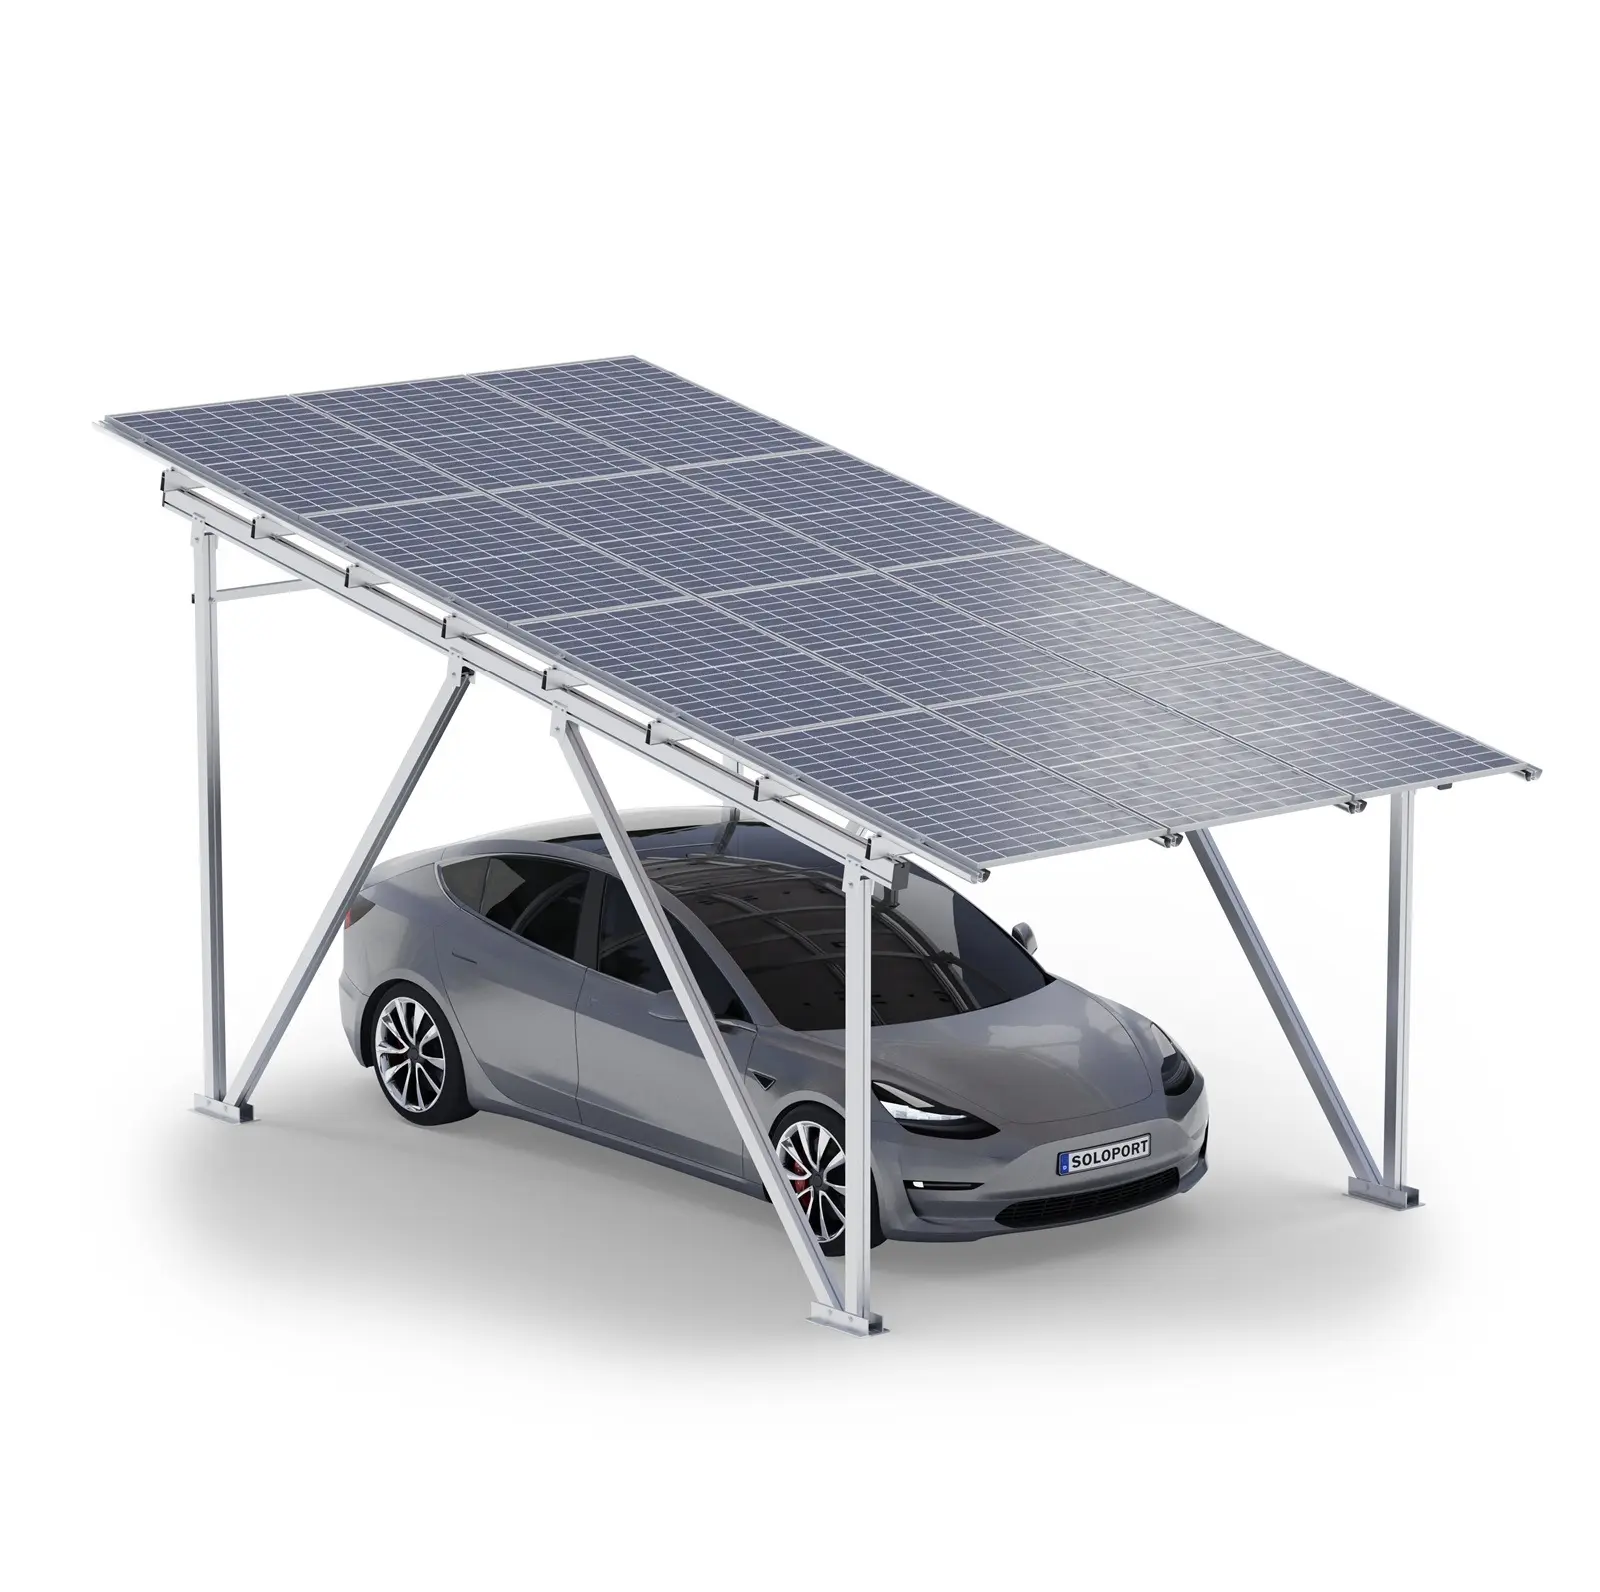 Soloport Marke SPG5 Aluminiumstruktur Solar-Autoportschuppen mit Solarpanels Elektrofahrzeug-Ladestation Parkplatz-Autoportschuppen